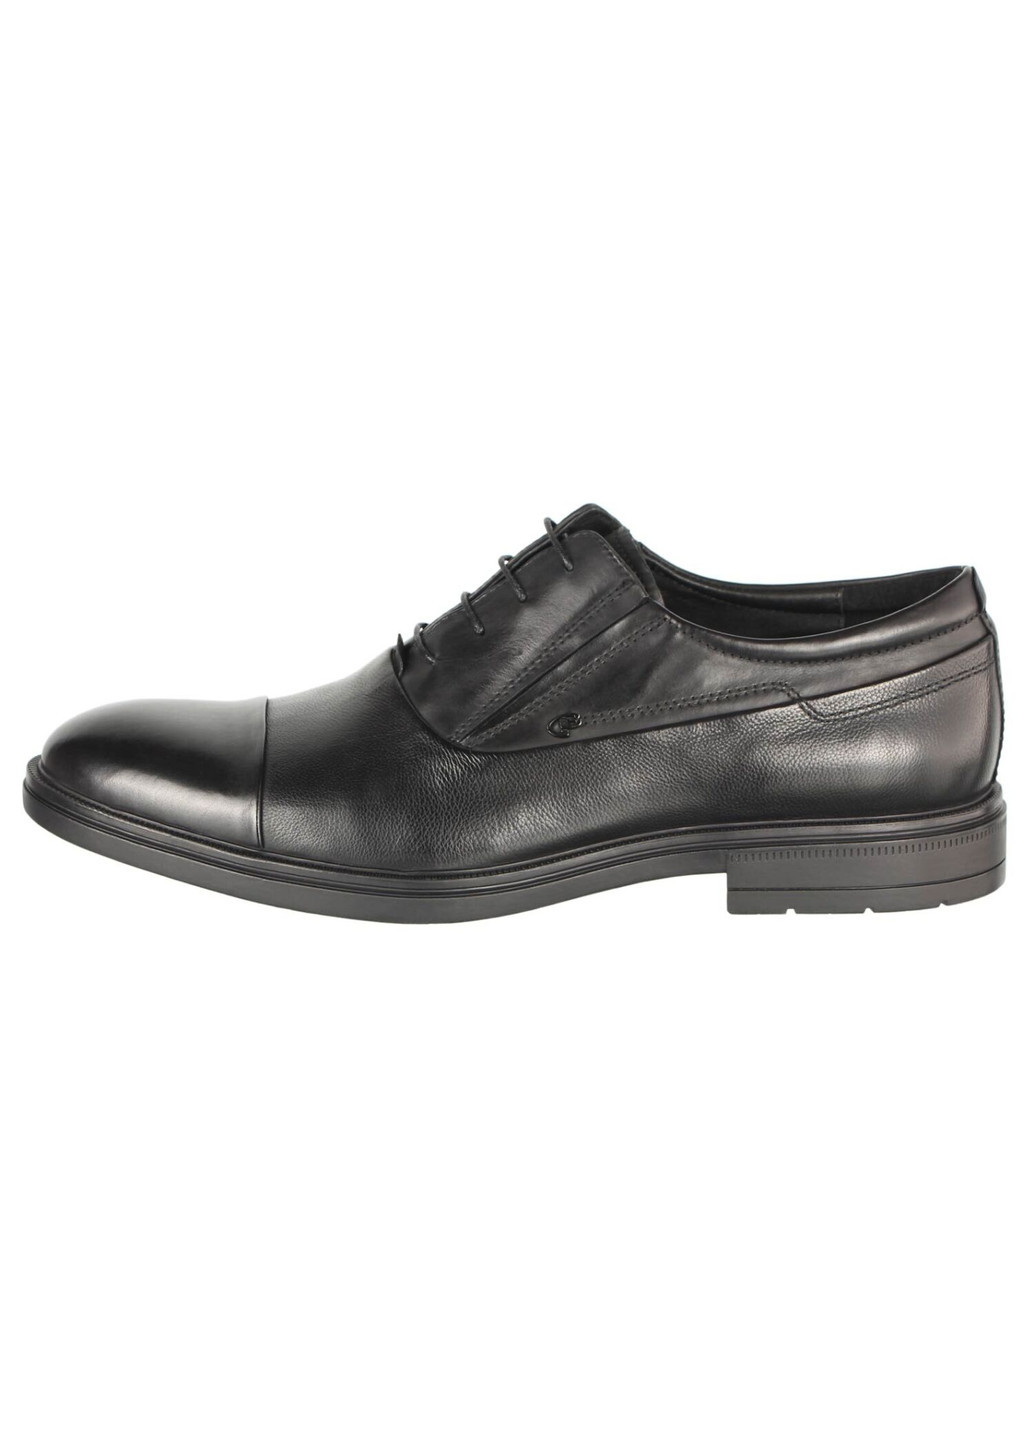 Черные мужские классические туфли 196478 Cosottinni на шнурках